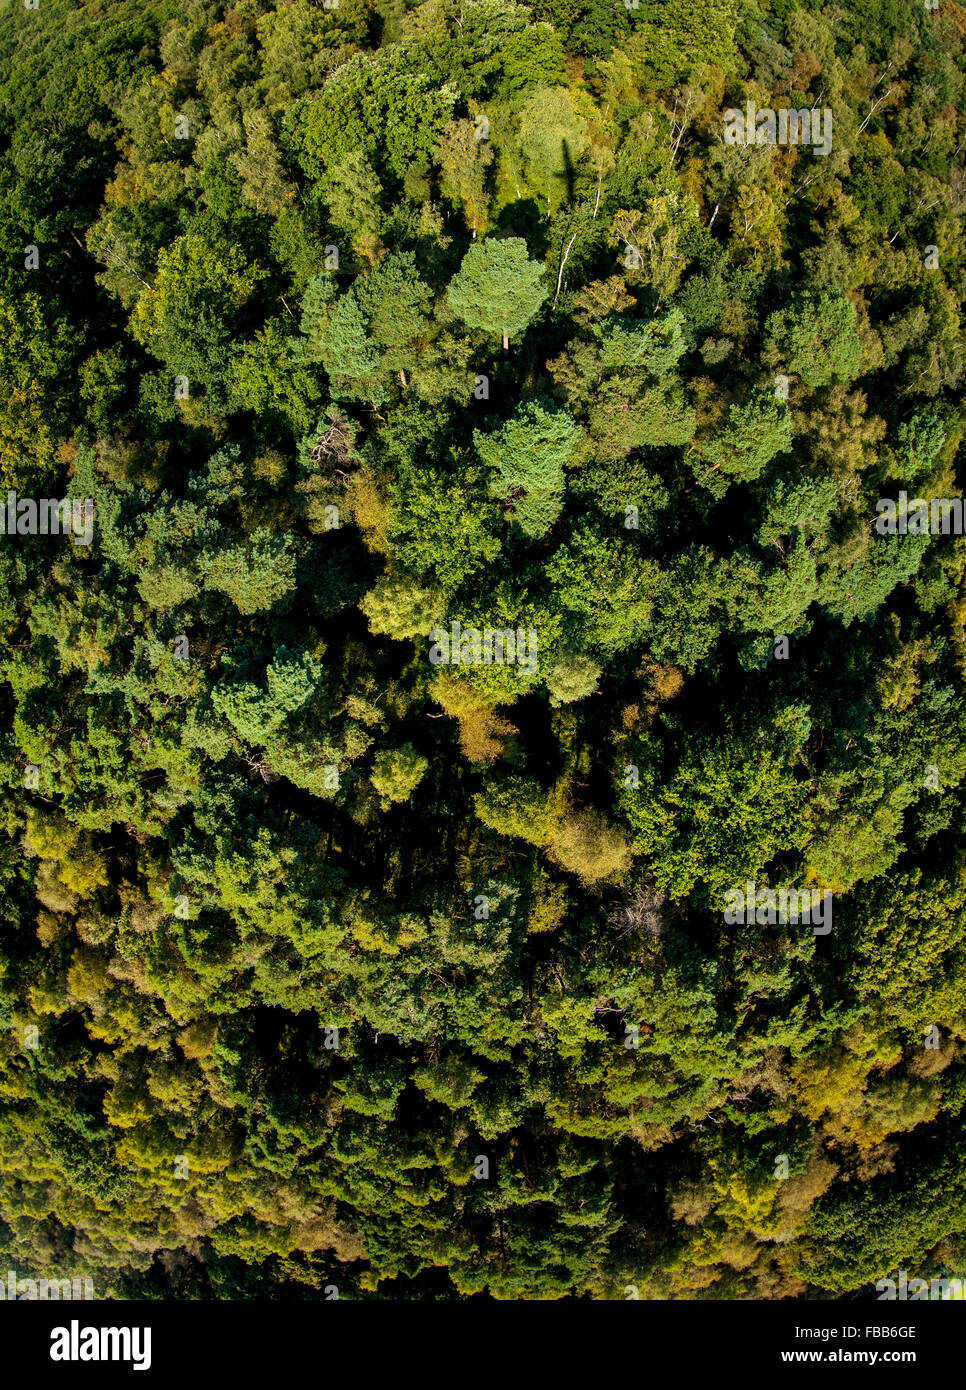 Luftaufnahme, Wald von einem vertikalen Ansicht, Perpendicular Recording, fisheye-Objektiv, Laubwald, Lüdinghausen, Münsterland, Stockfoto